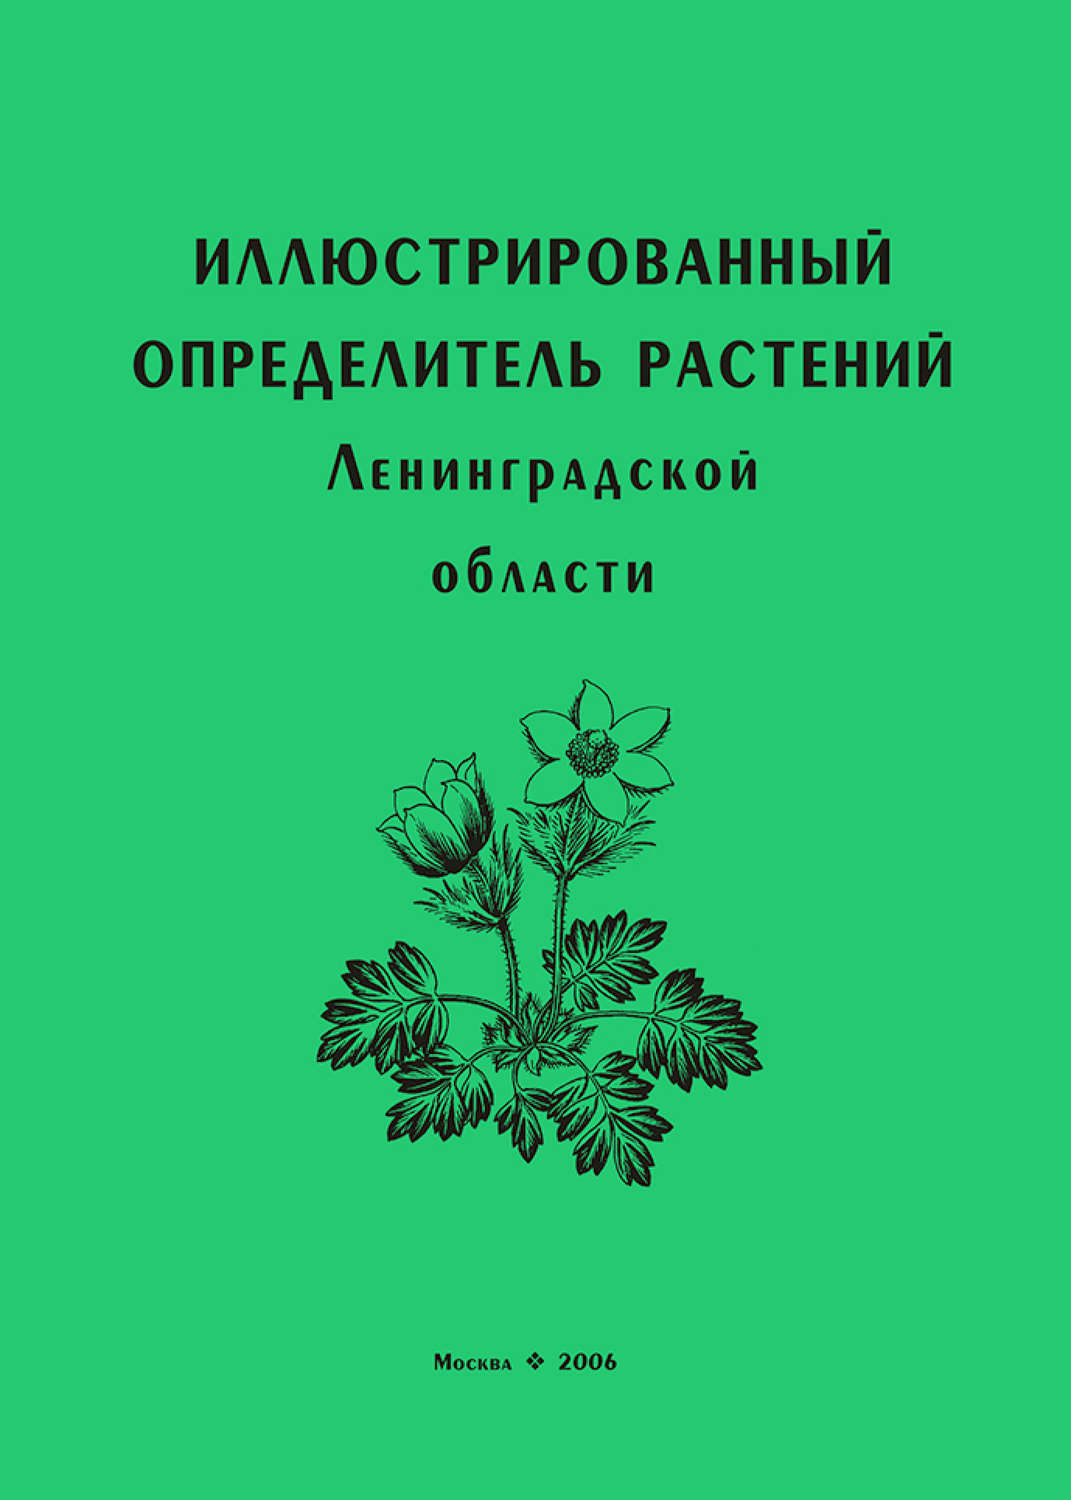 Атлас определитель растений Ленинградской области